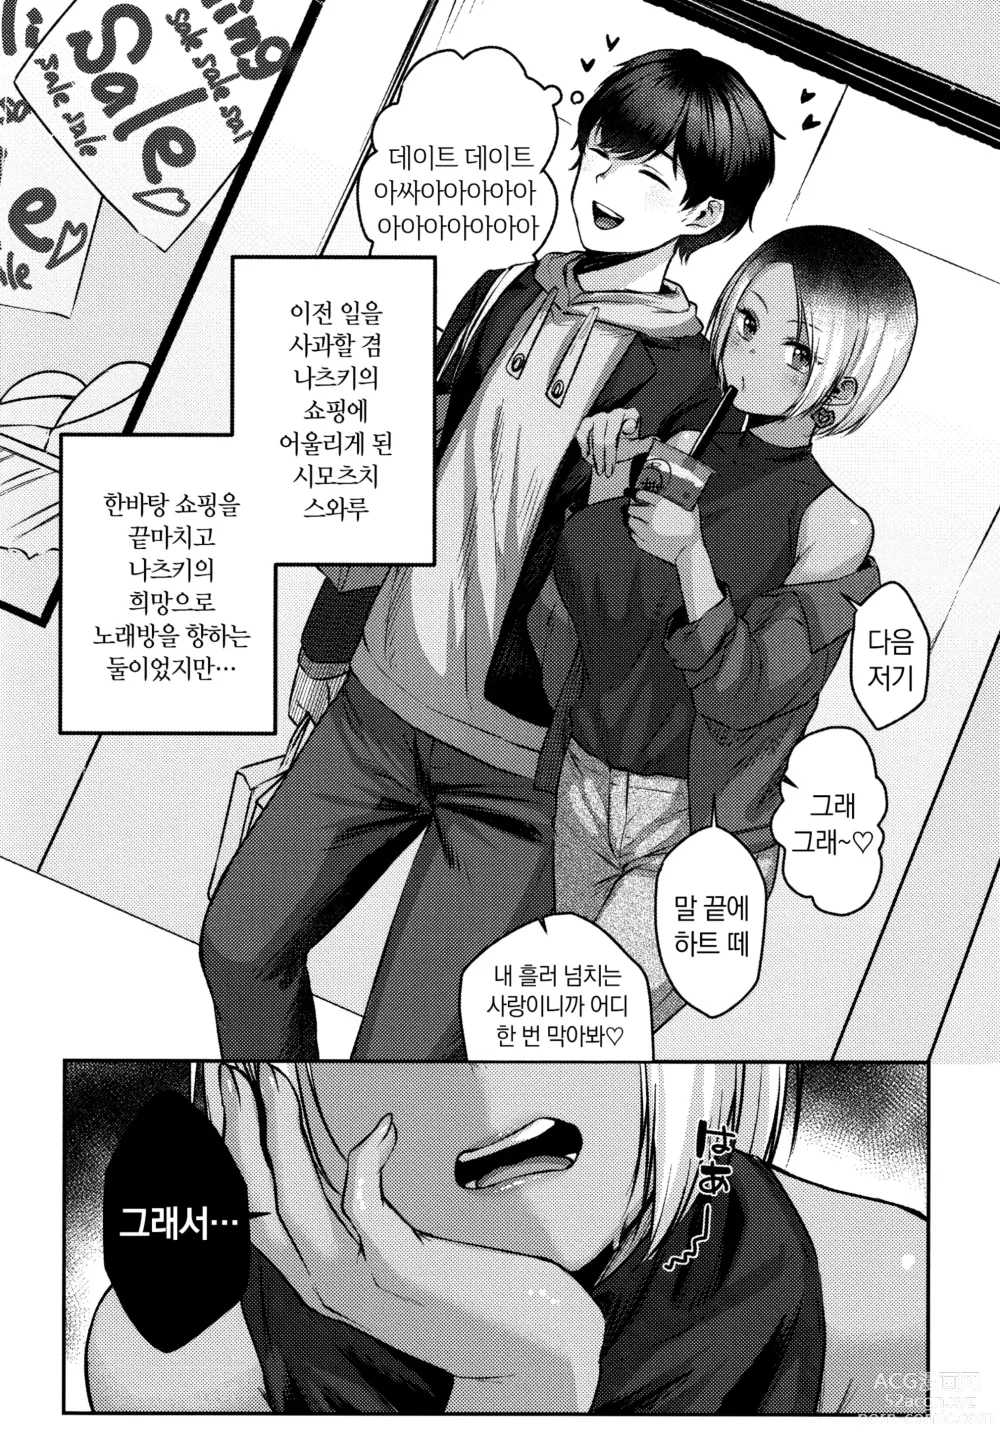 Page 216 of manga 도게파코 + 8P 소책자